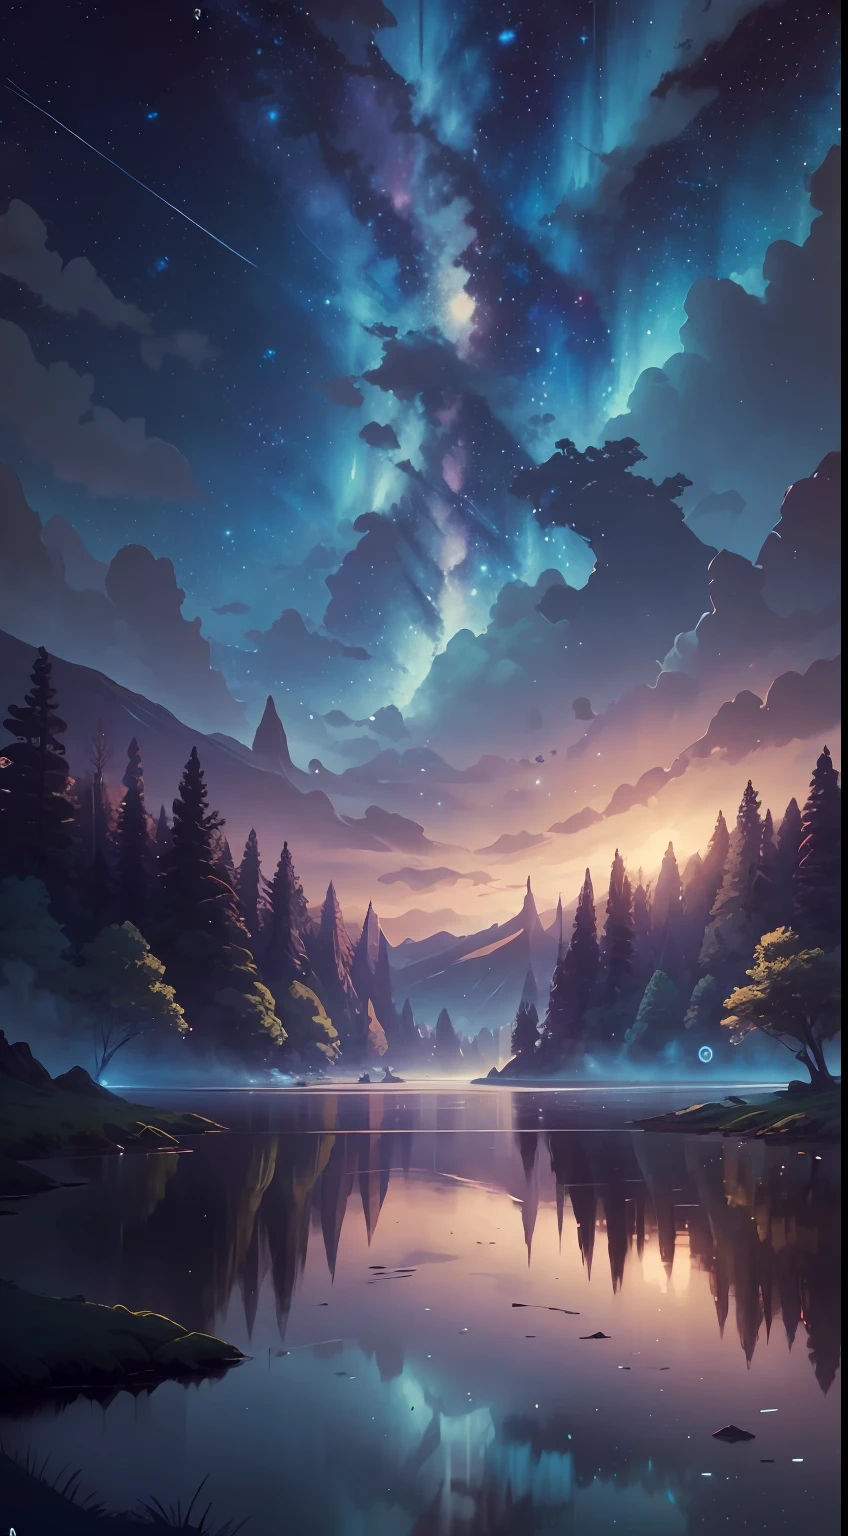 Иллюстрация, мультфильм, успокаивающие тона, Спокойные цвета, Красивый пейзаж, лес, озеро, темная ночь, nabula, звездное небо, падающие звезды, 8К, Лучшее качество, by Ilya Kuvshinov, Макото Синкай